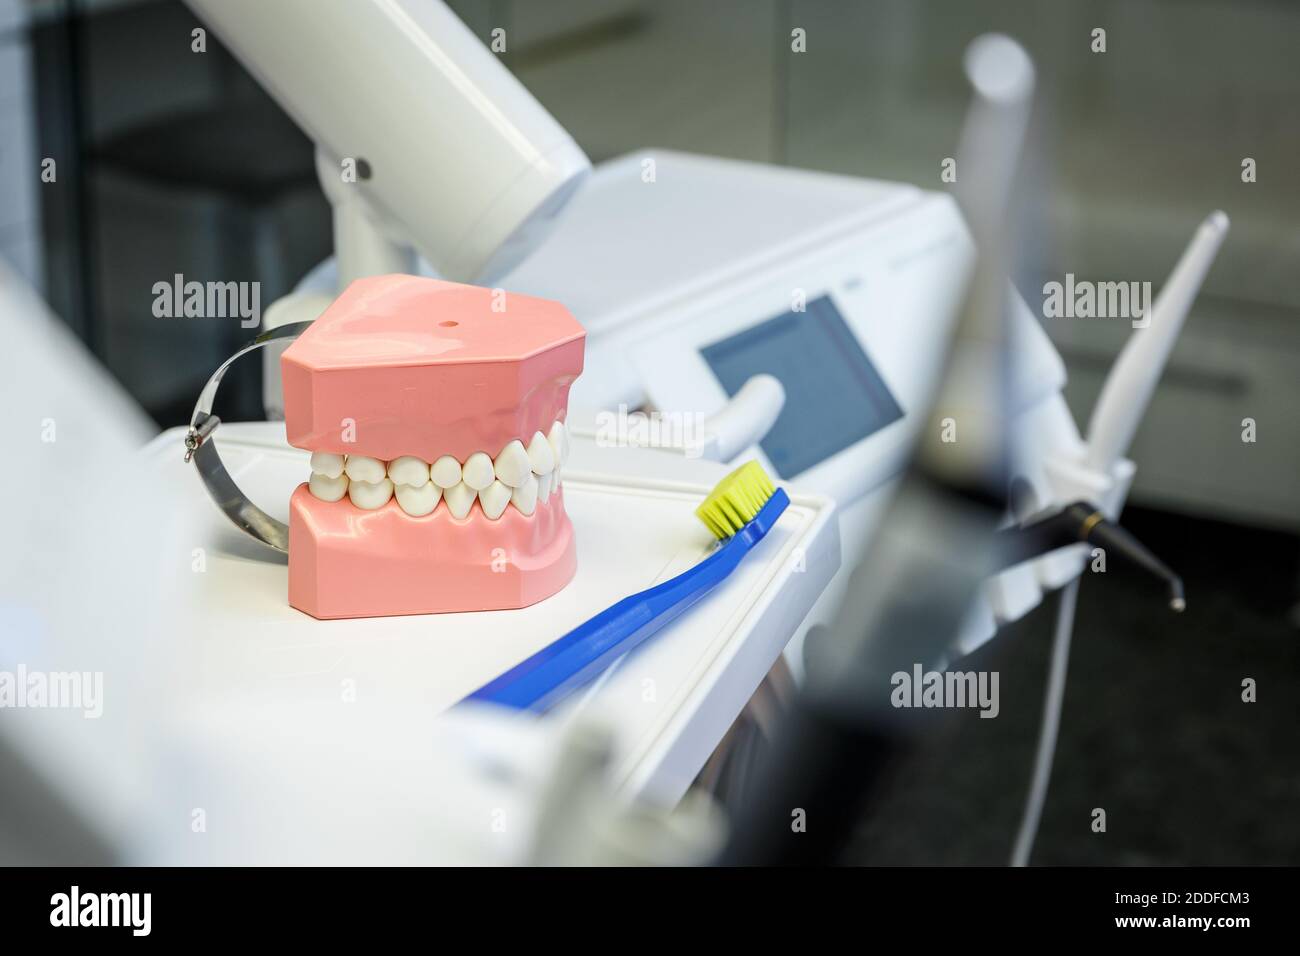 Modèle d'une mâchoire et d'une brosse à dents humaines dans un cabinet dentaire. Concept de soins de santé et de dentisterie Banque D'Images